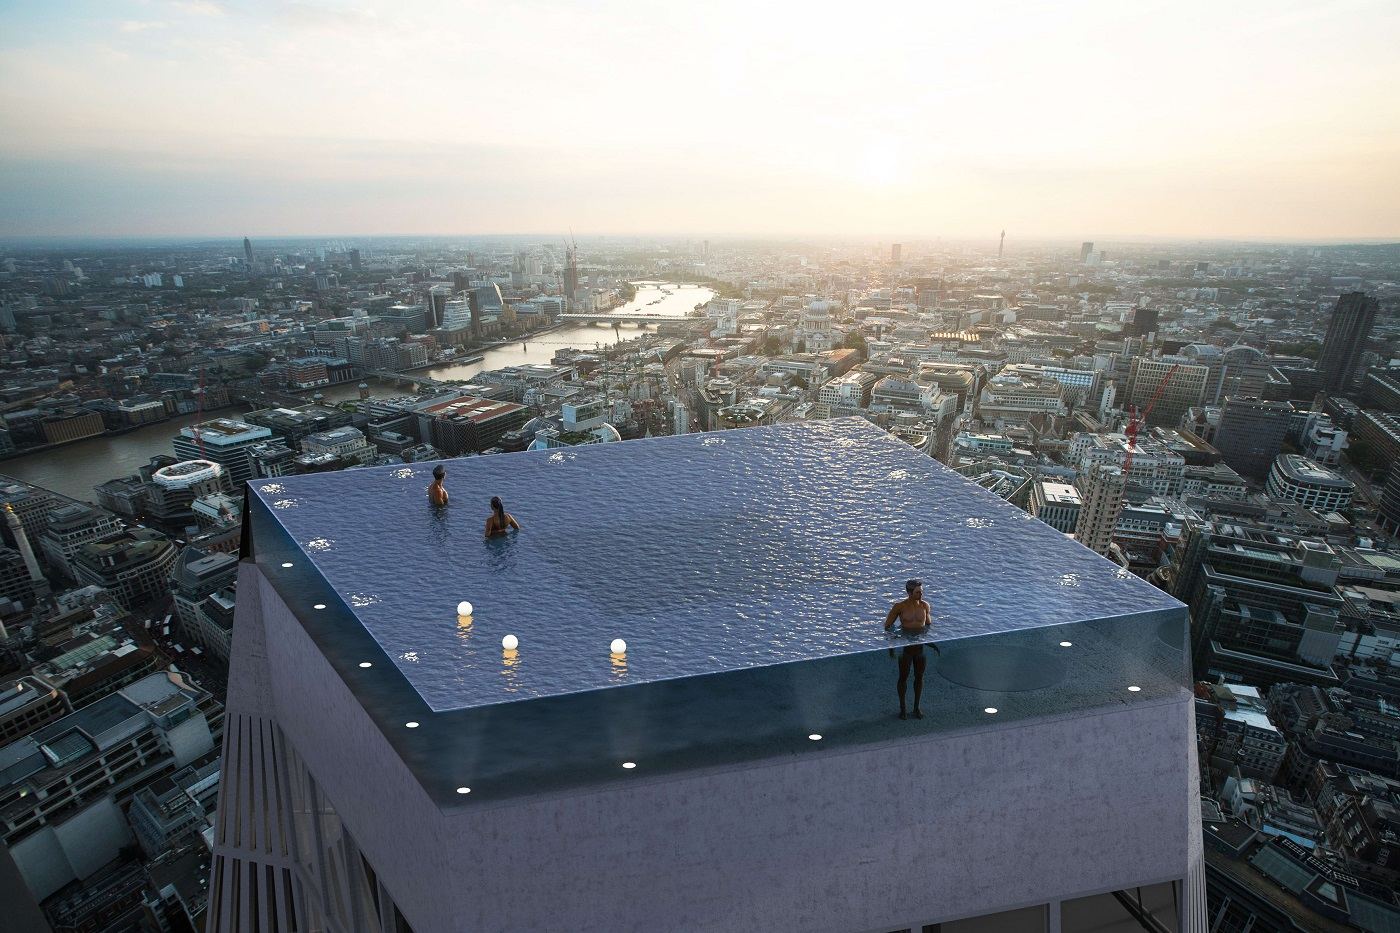 Piscina com borda infinita será inaugurada no topo de prédio em Londres